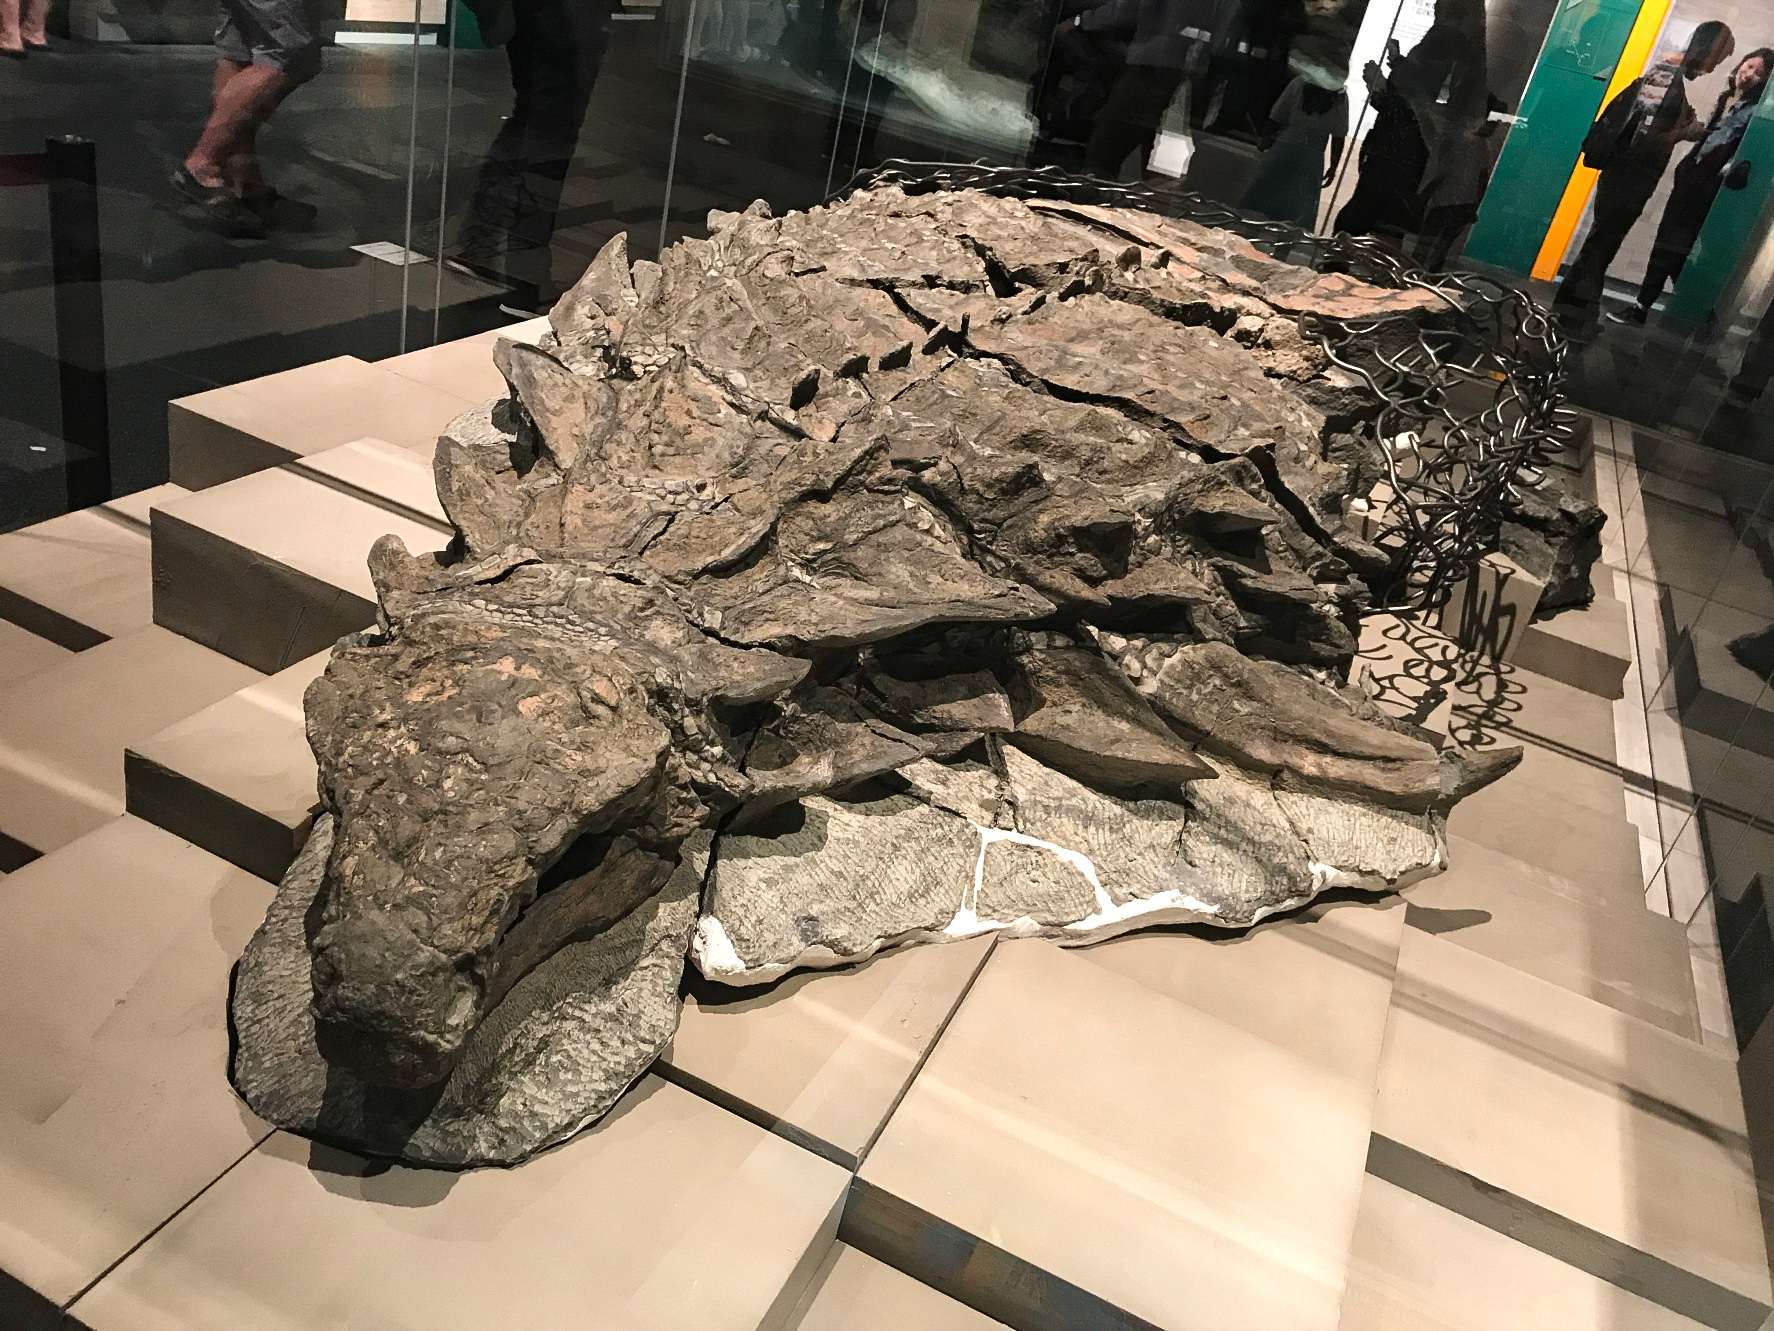 Borealopelta (betekent "noordelijk schild") is een geslacht van nodosaurid ankylosaur uit het vroege Krijt van Alberta, Canada. Het bevat een enkele soort, B. markmitchelli, in 2017 genoemd door Caleb Brown en collega's van een goed bewaard gebleven exemplaar dat bekend staat als de Suncor nodosaur.